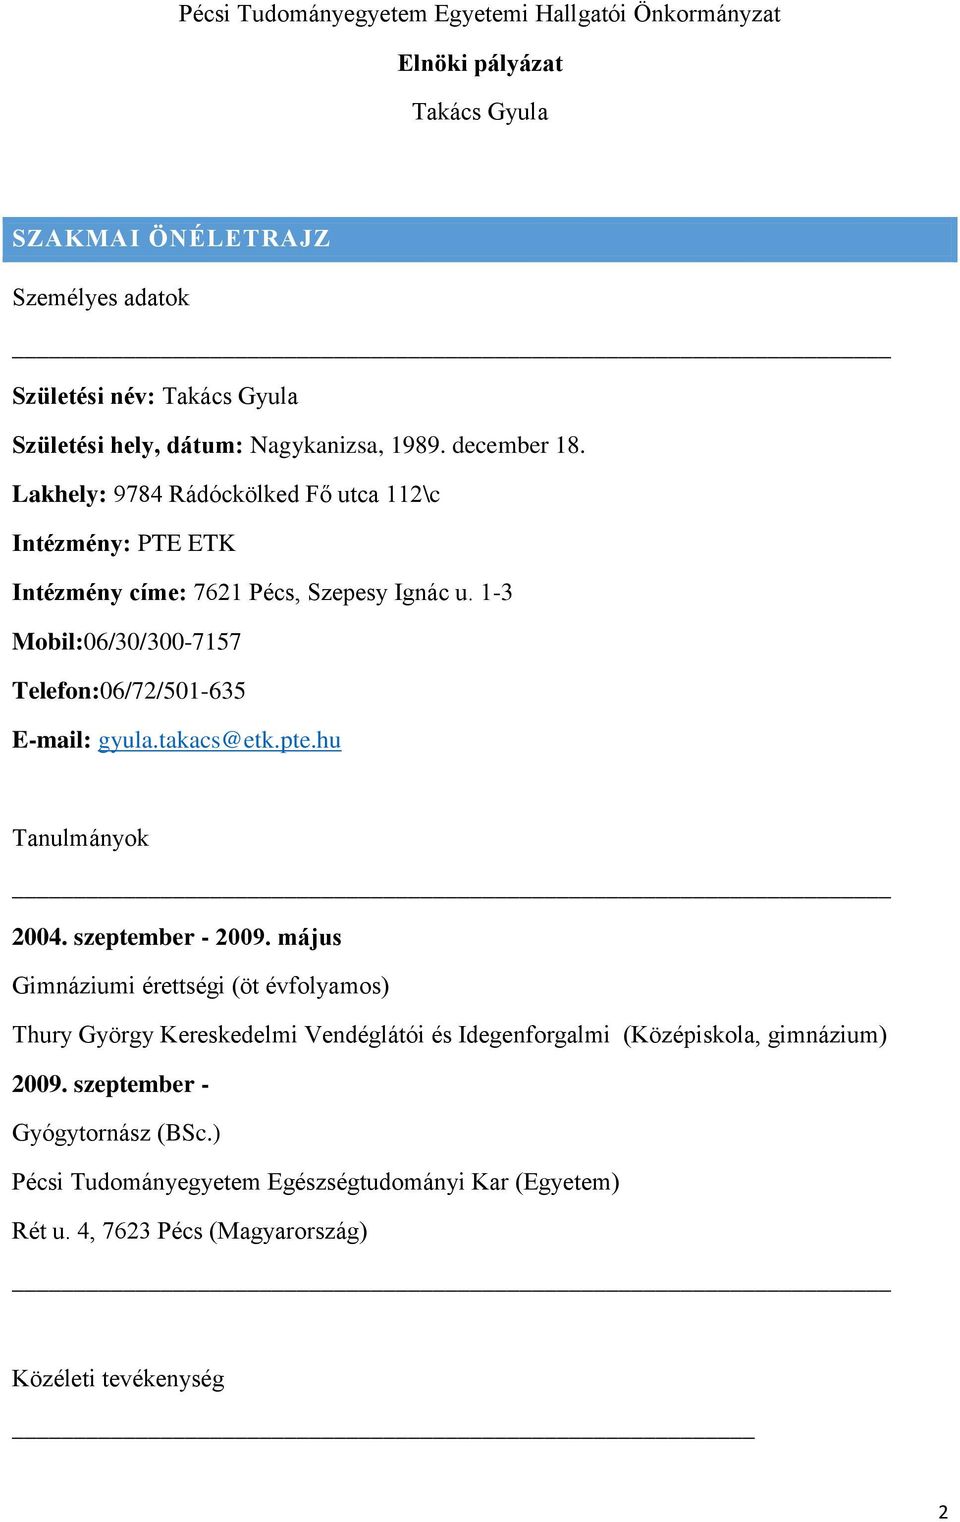 Pécsi Tudományegyetem Egyetemi Hallgatói Önkormányzat. Elnöki pályázat  Takács Gyula - PDF Free Download